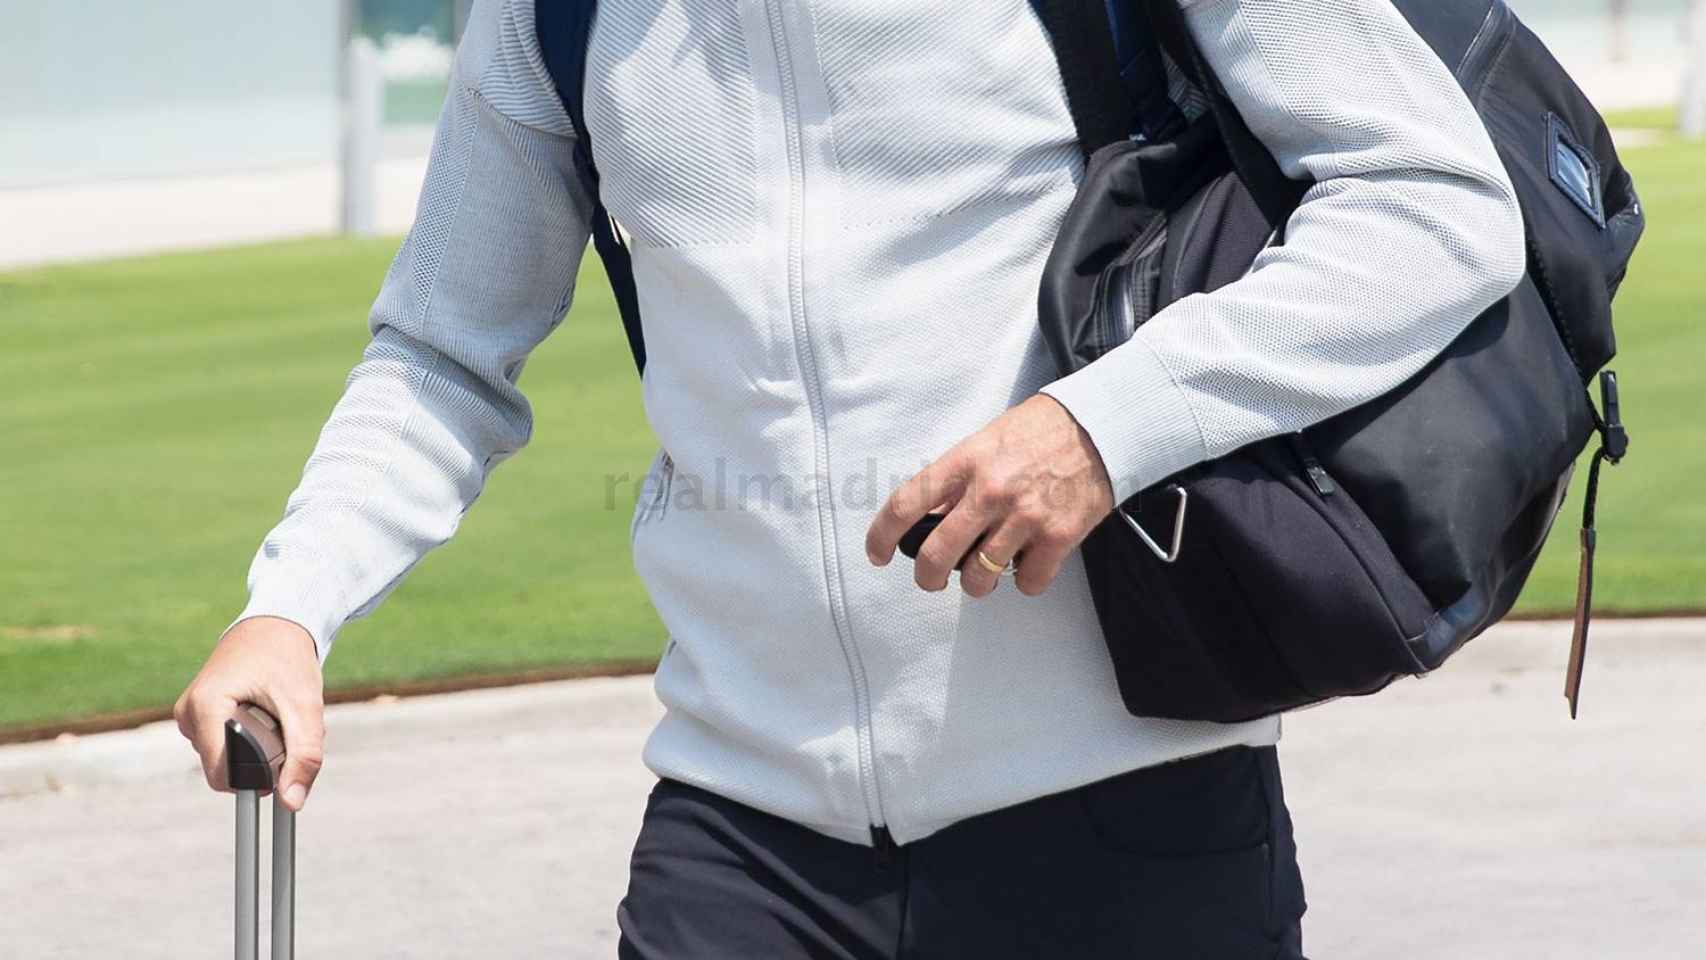 Zidane antes de subir al avión